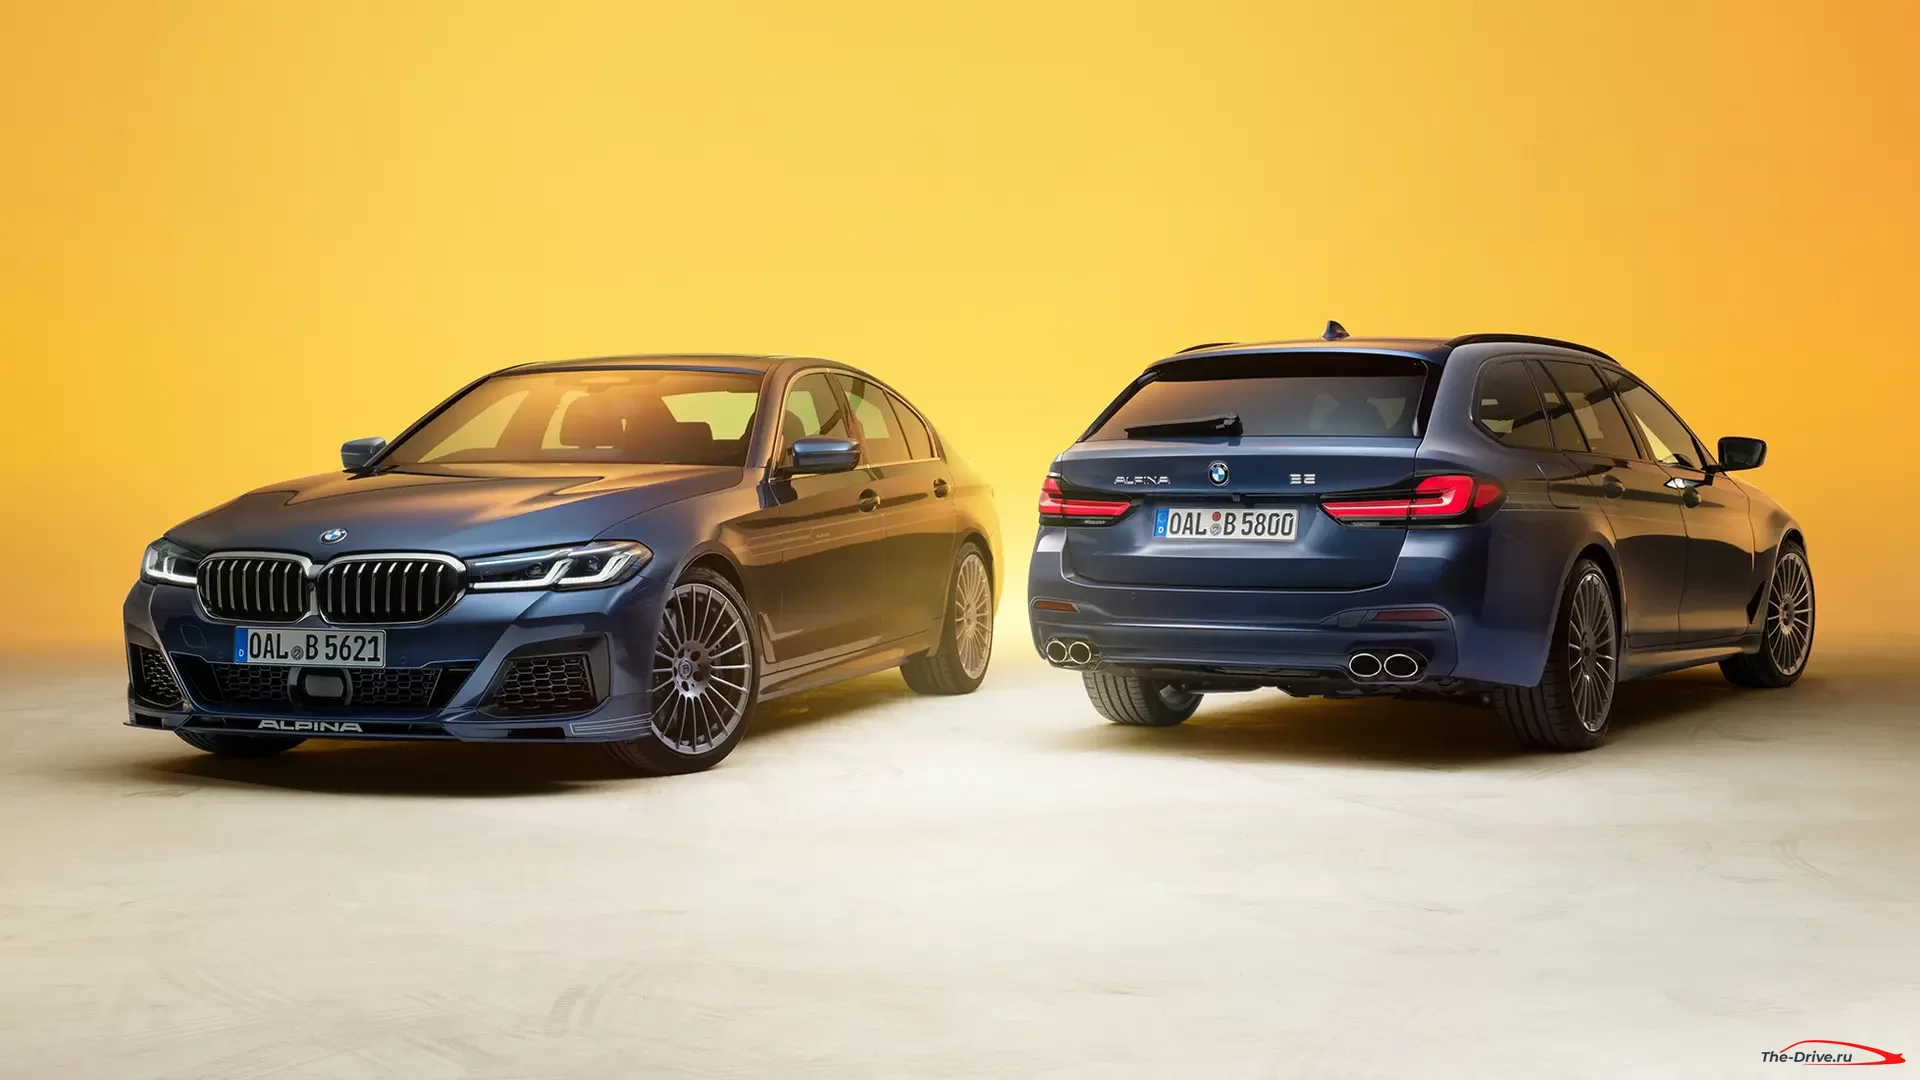 BMW Alpina B5 и D5 S 2020 года получают новый стиль и больше мощности